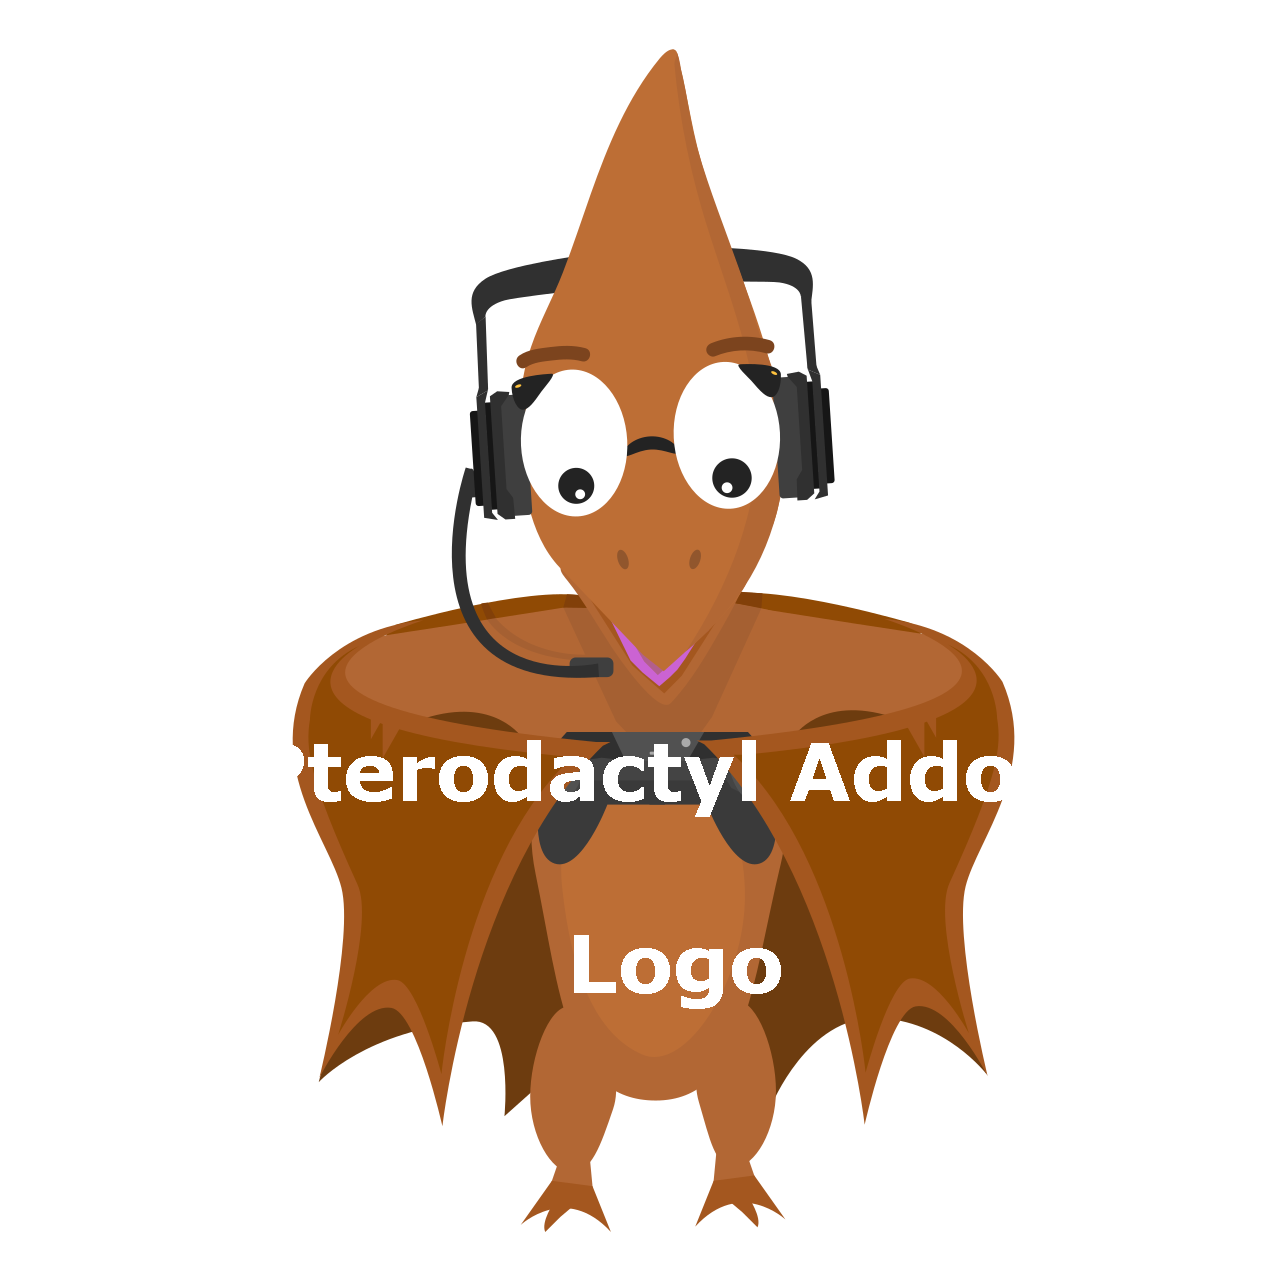 Pterodactyl Addon - Logo Image 1.x.x